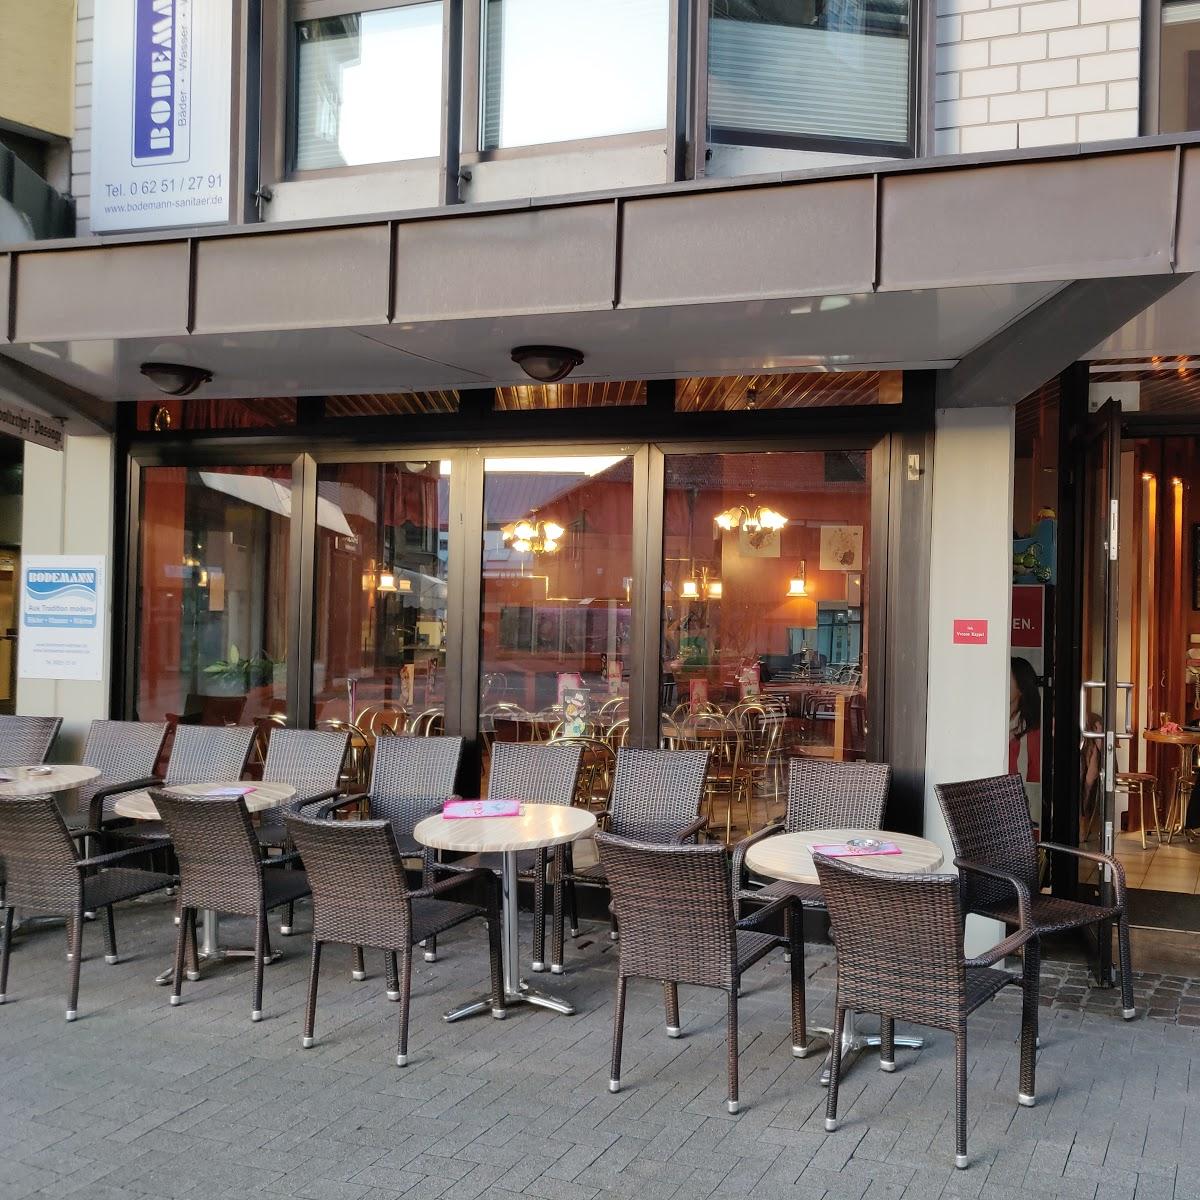 Restaurant "Eiscafé Rialto" in Bensheim